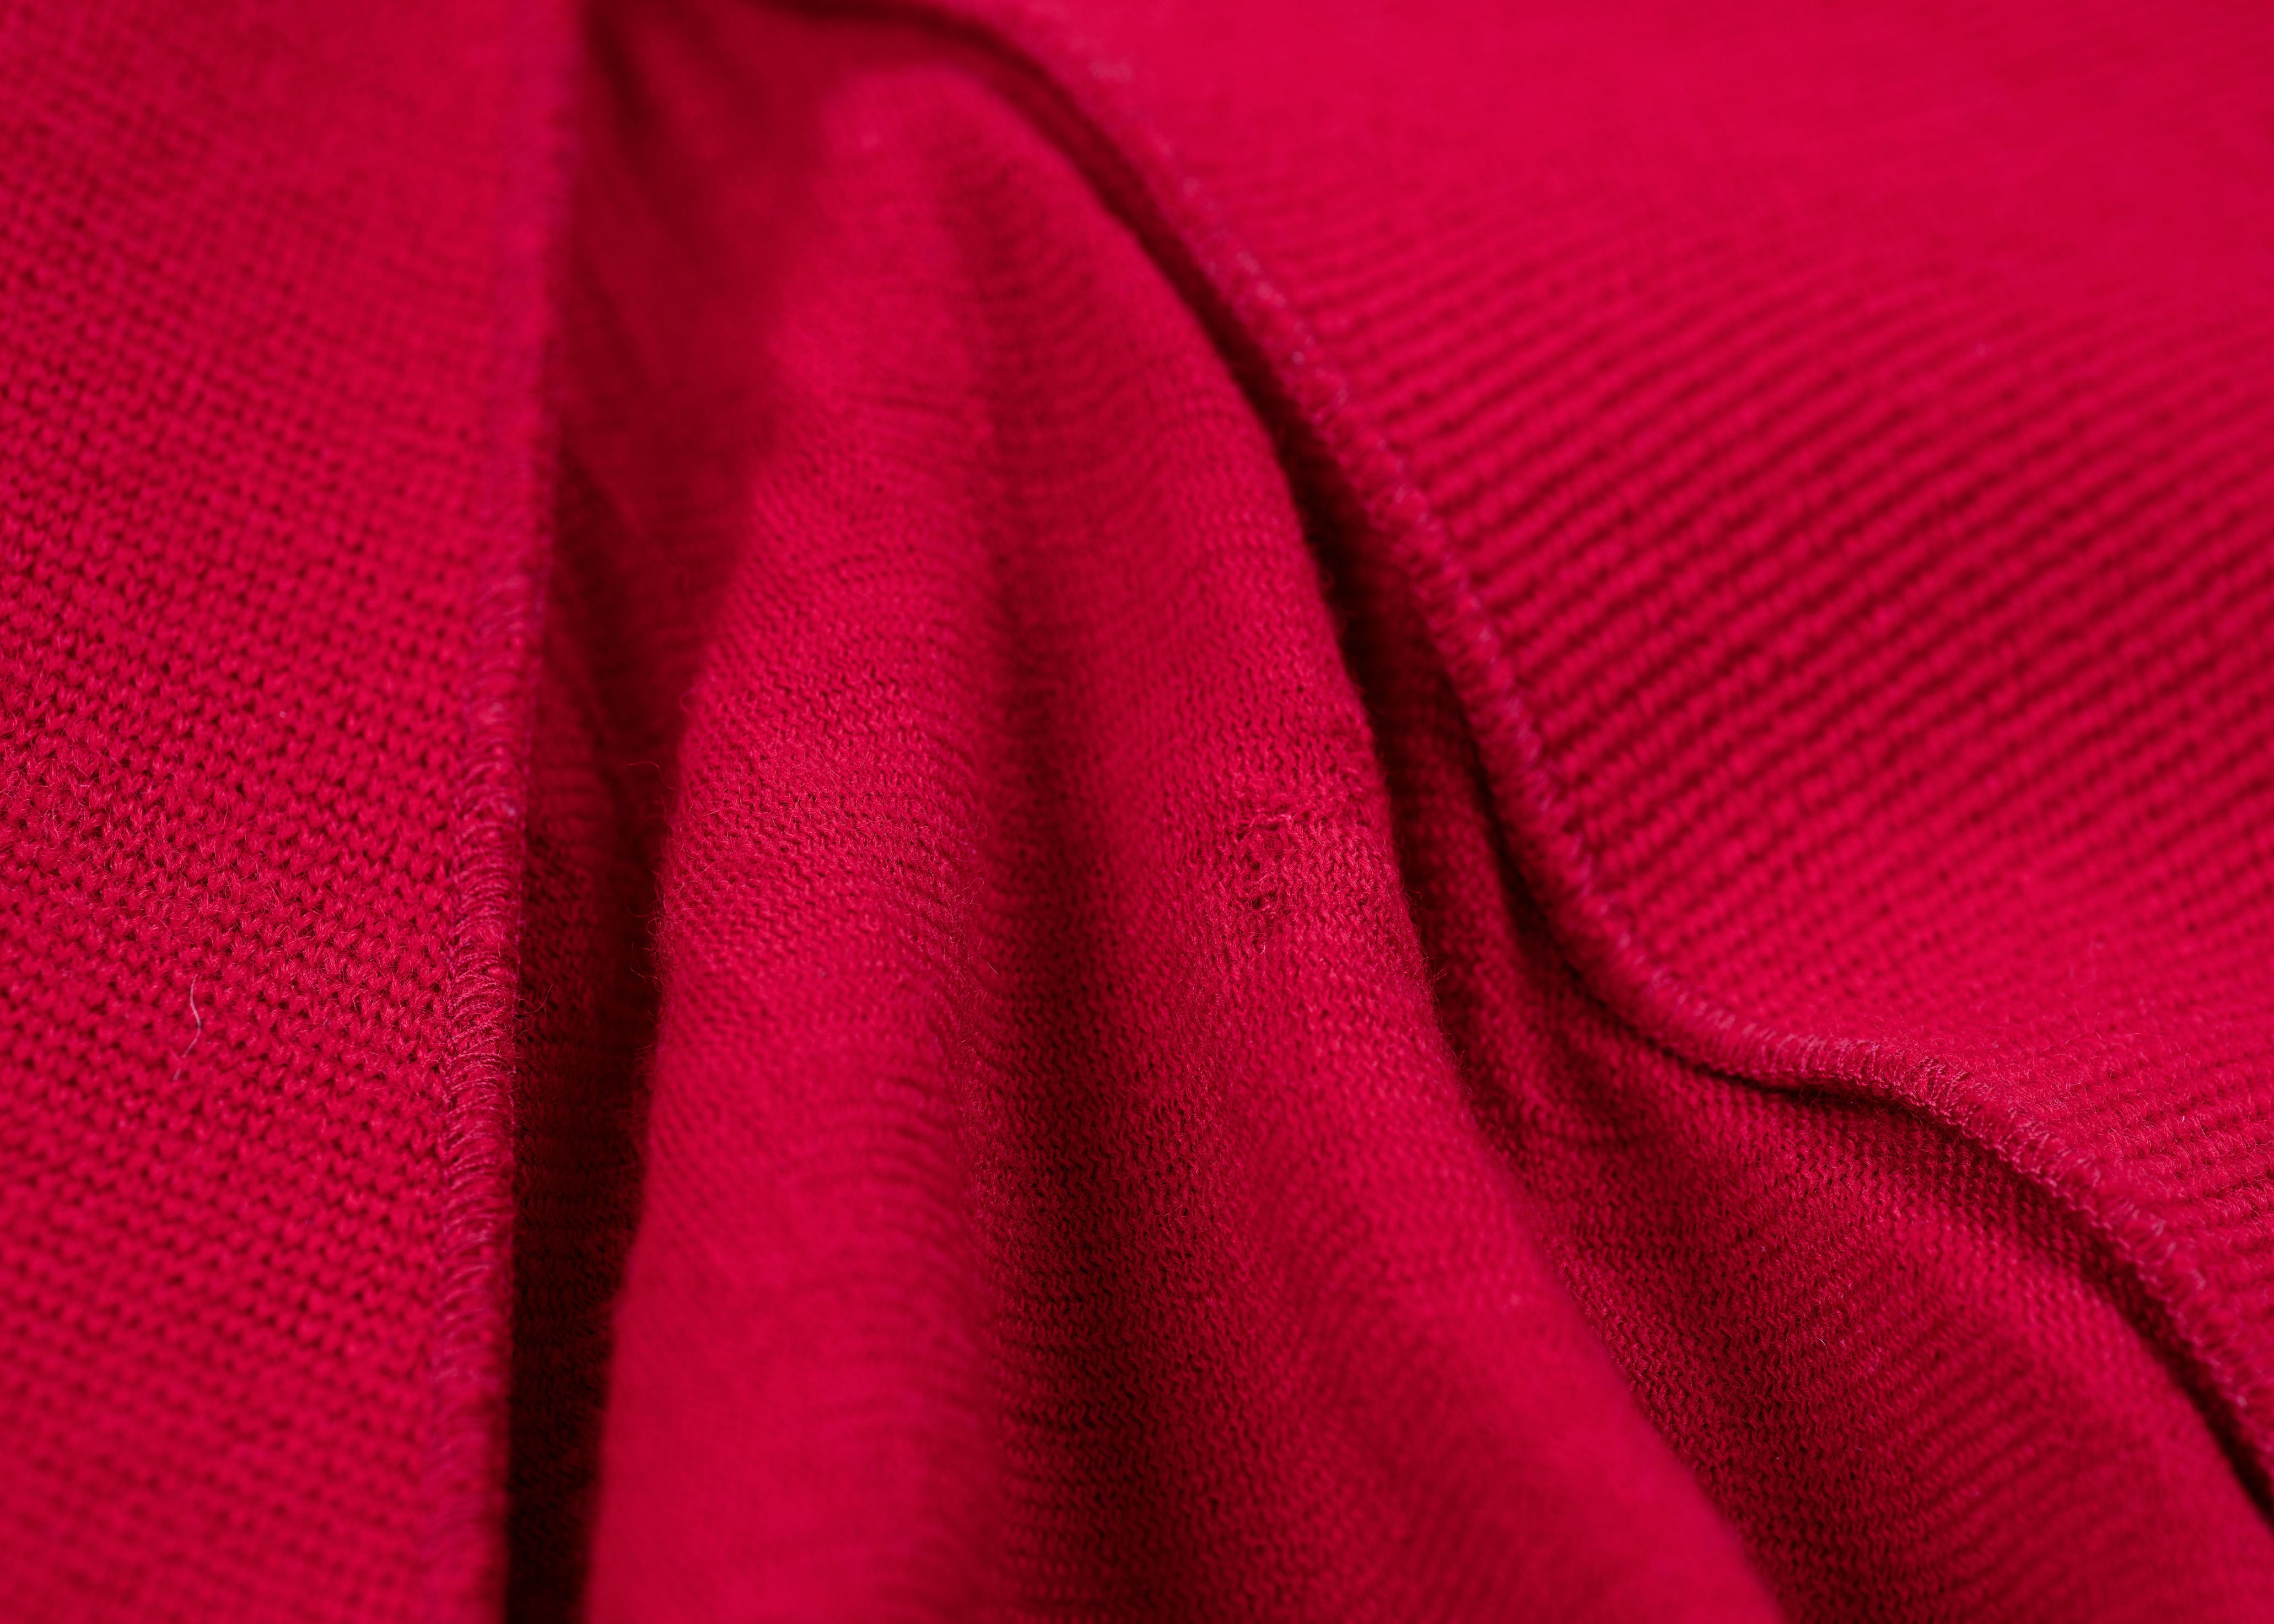 Marimekko by Ritva Falla Red Wool Blazer & Skirt Suit, SIZE S